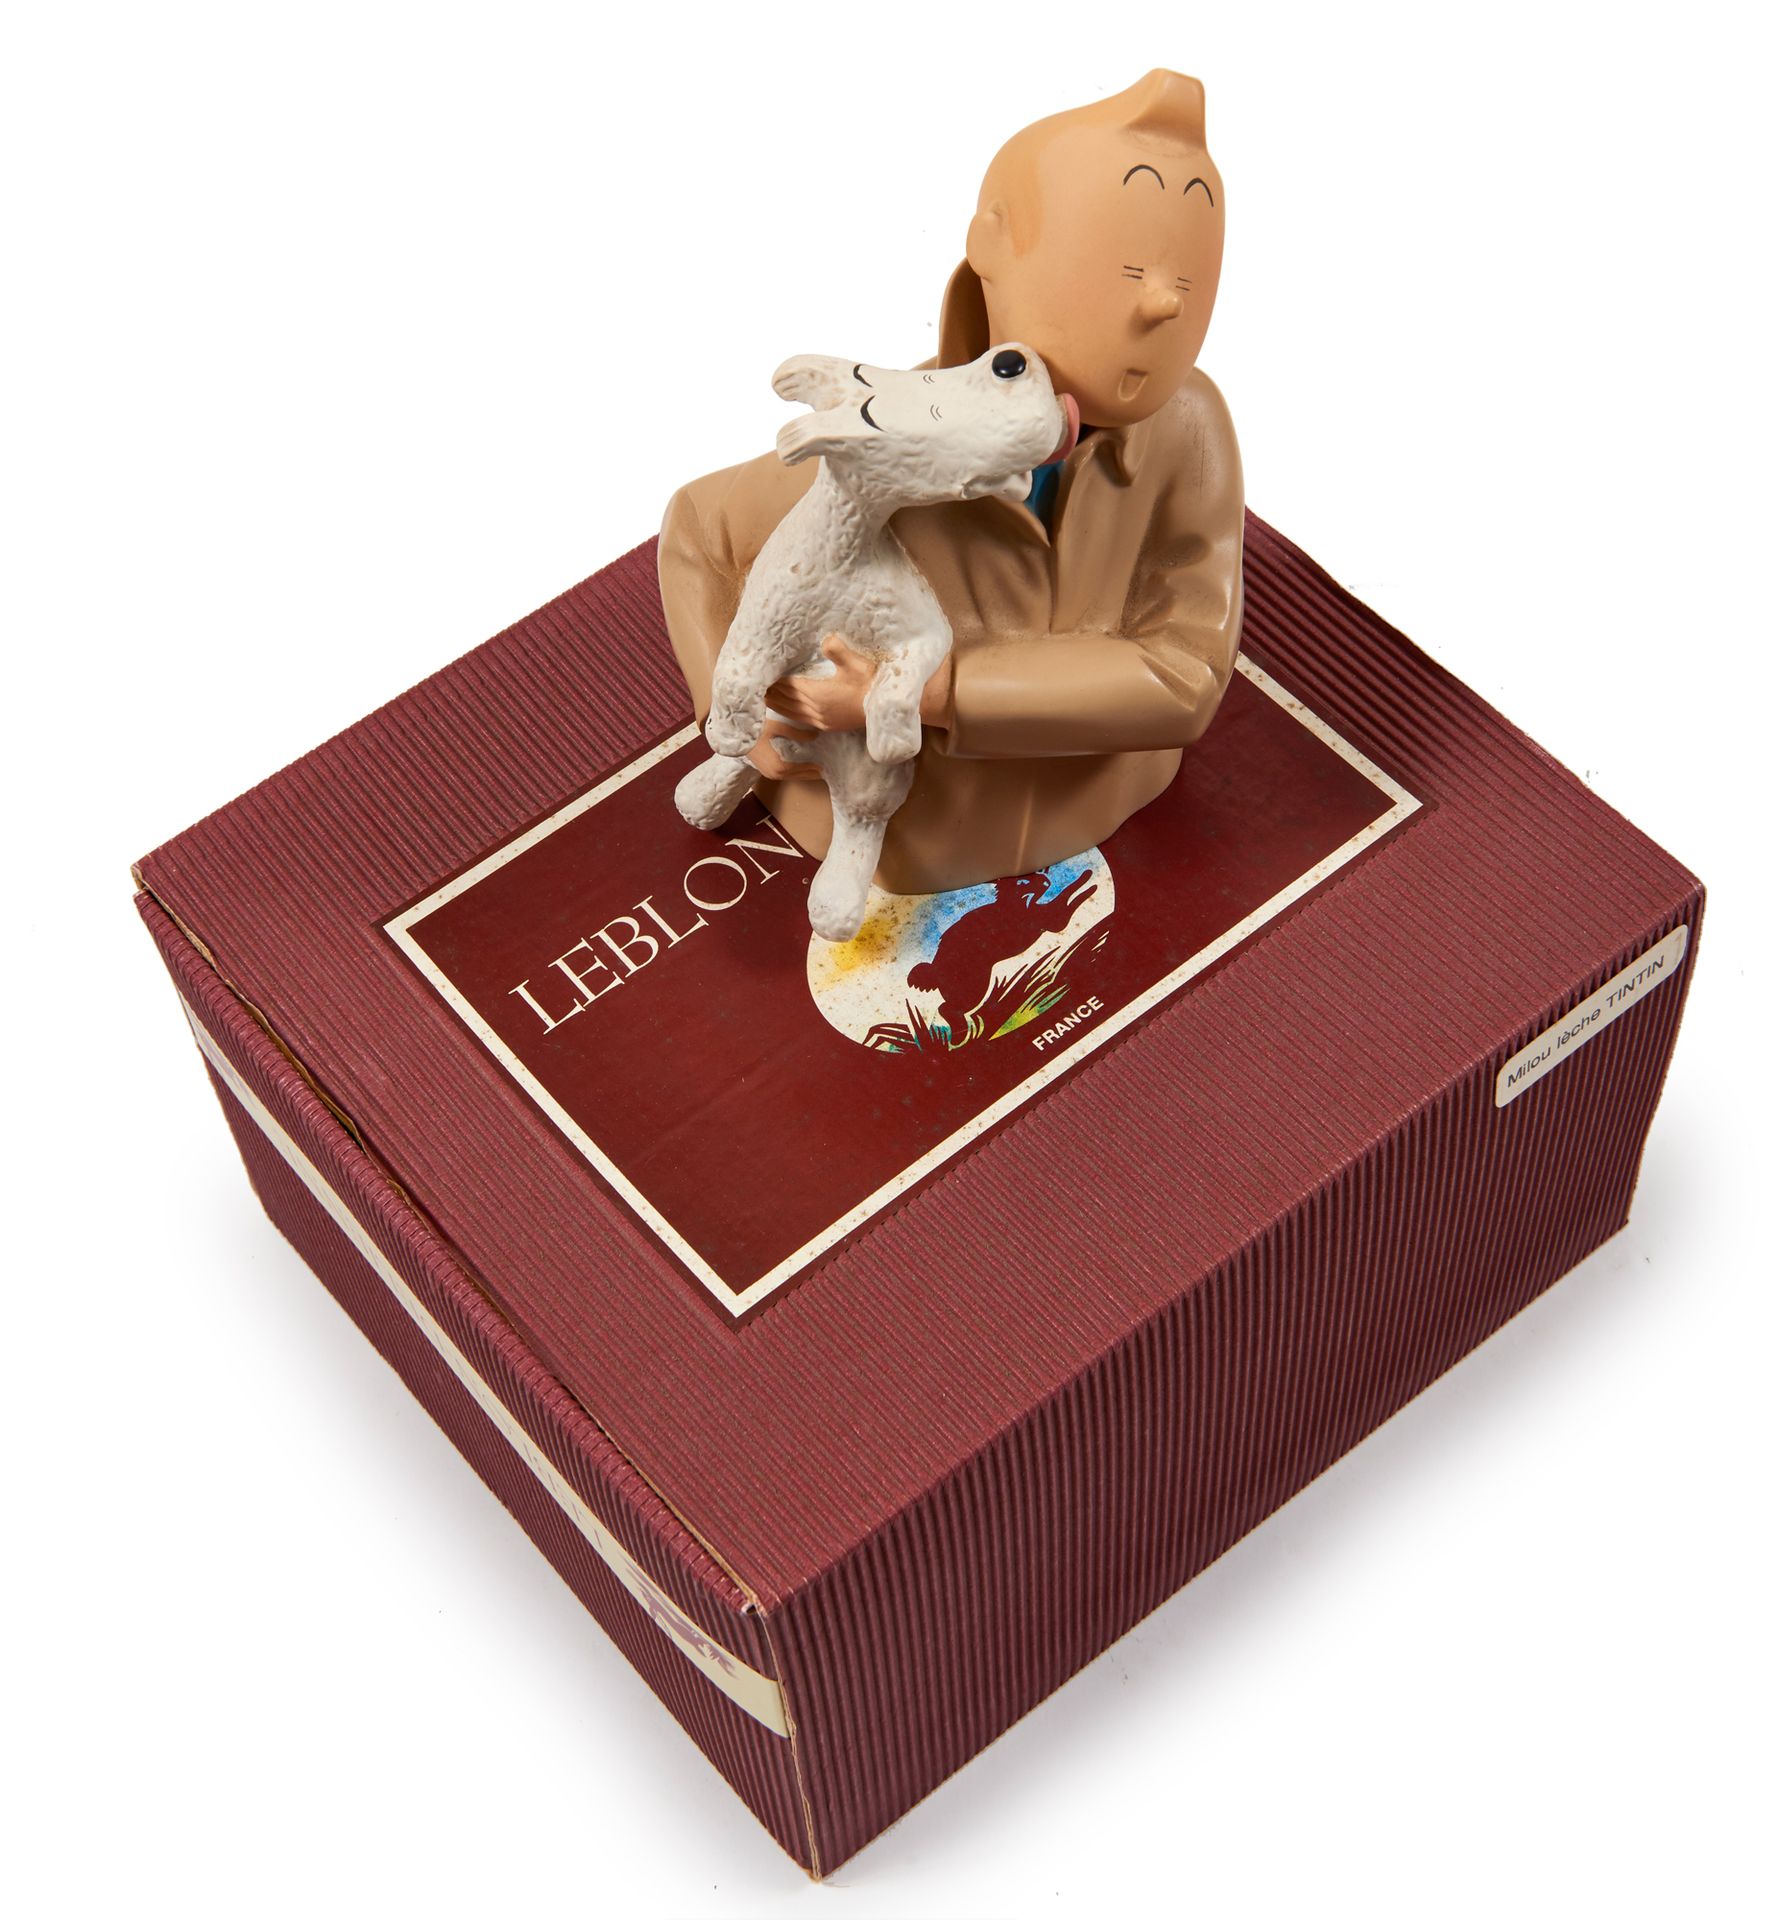 Leblon-Delienne - Snowy che lecca Tintin : Figurina che rappresenta Snowy tra le&hellip;